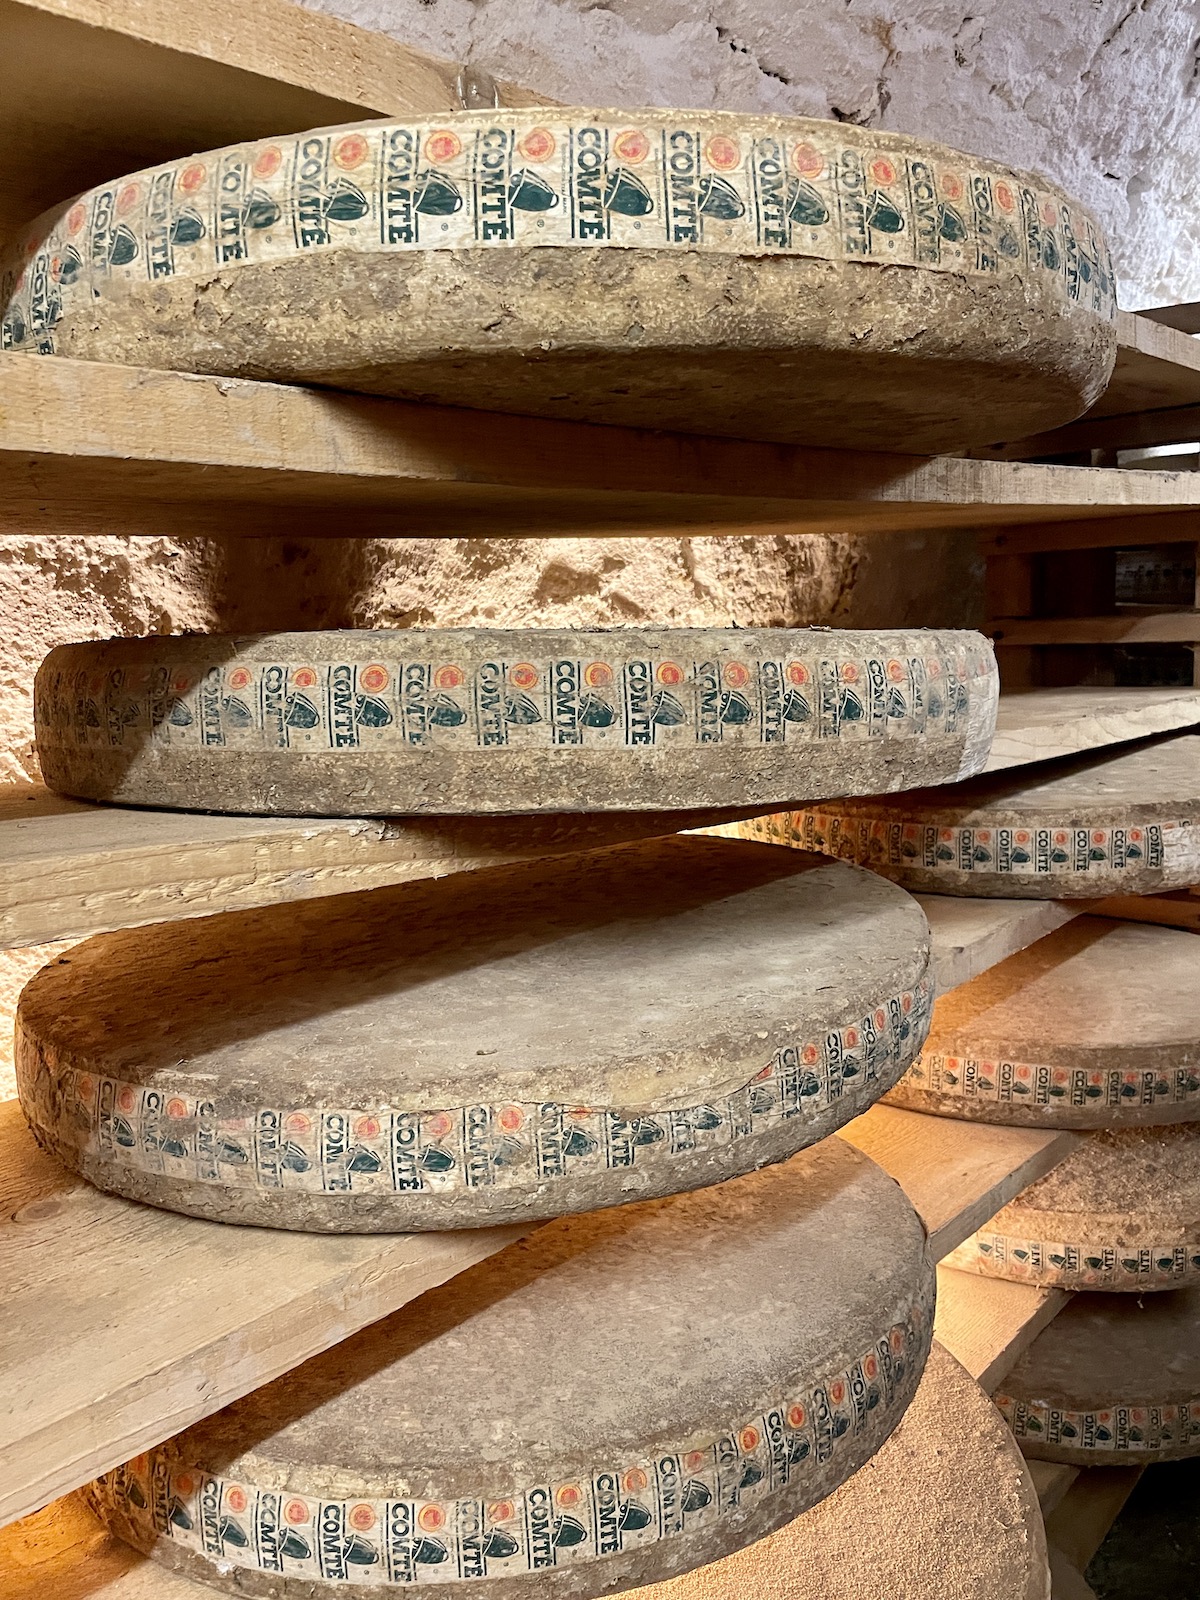 Wheels of Comte Cheese on wood shelves.